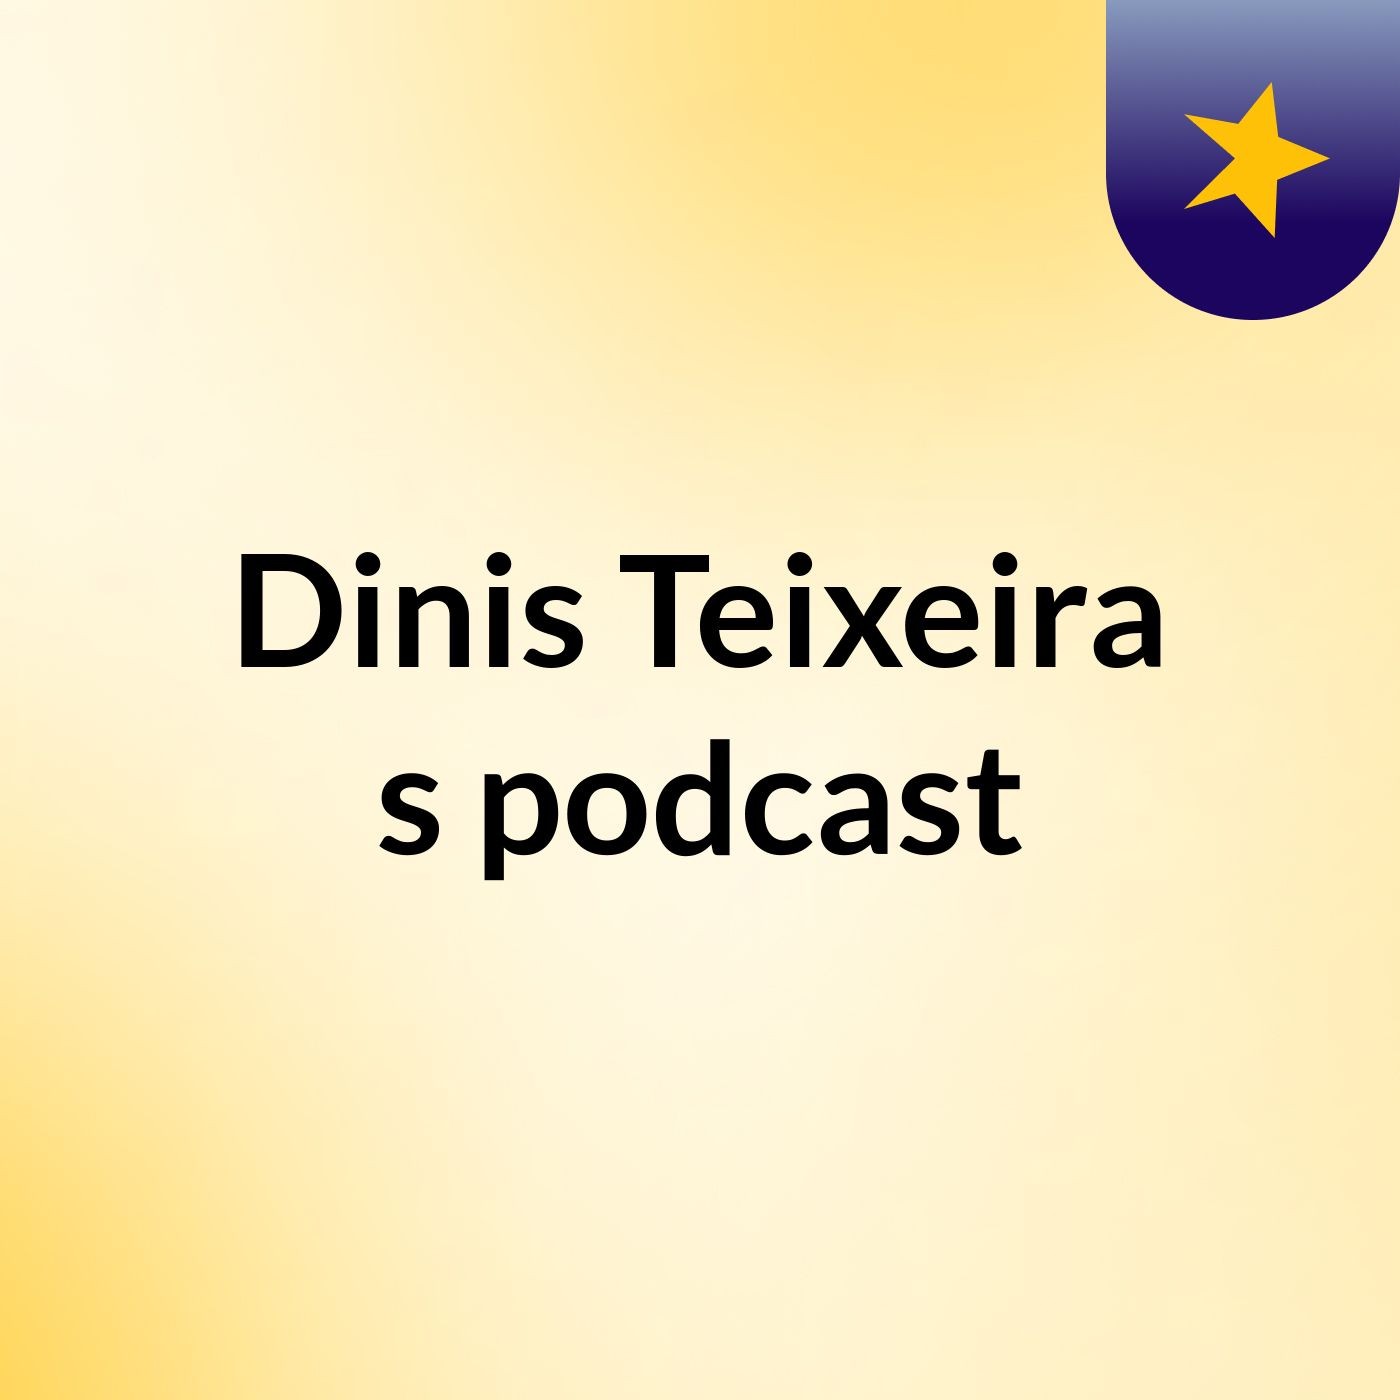 Dinis Teixeira's podcast